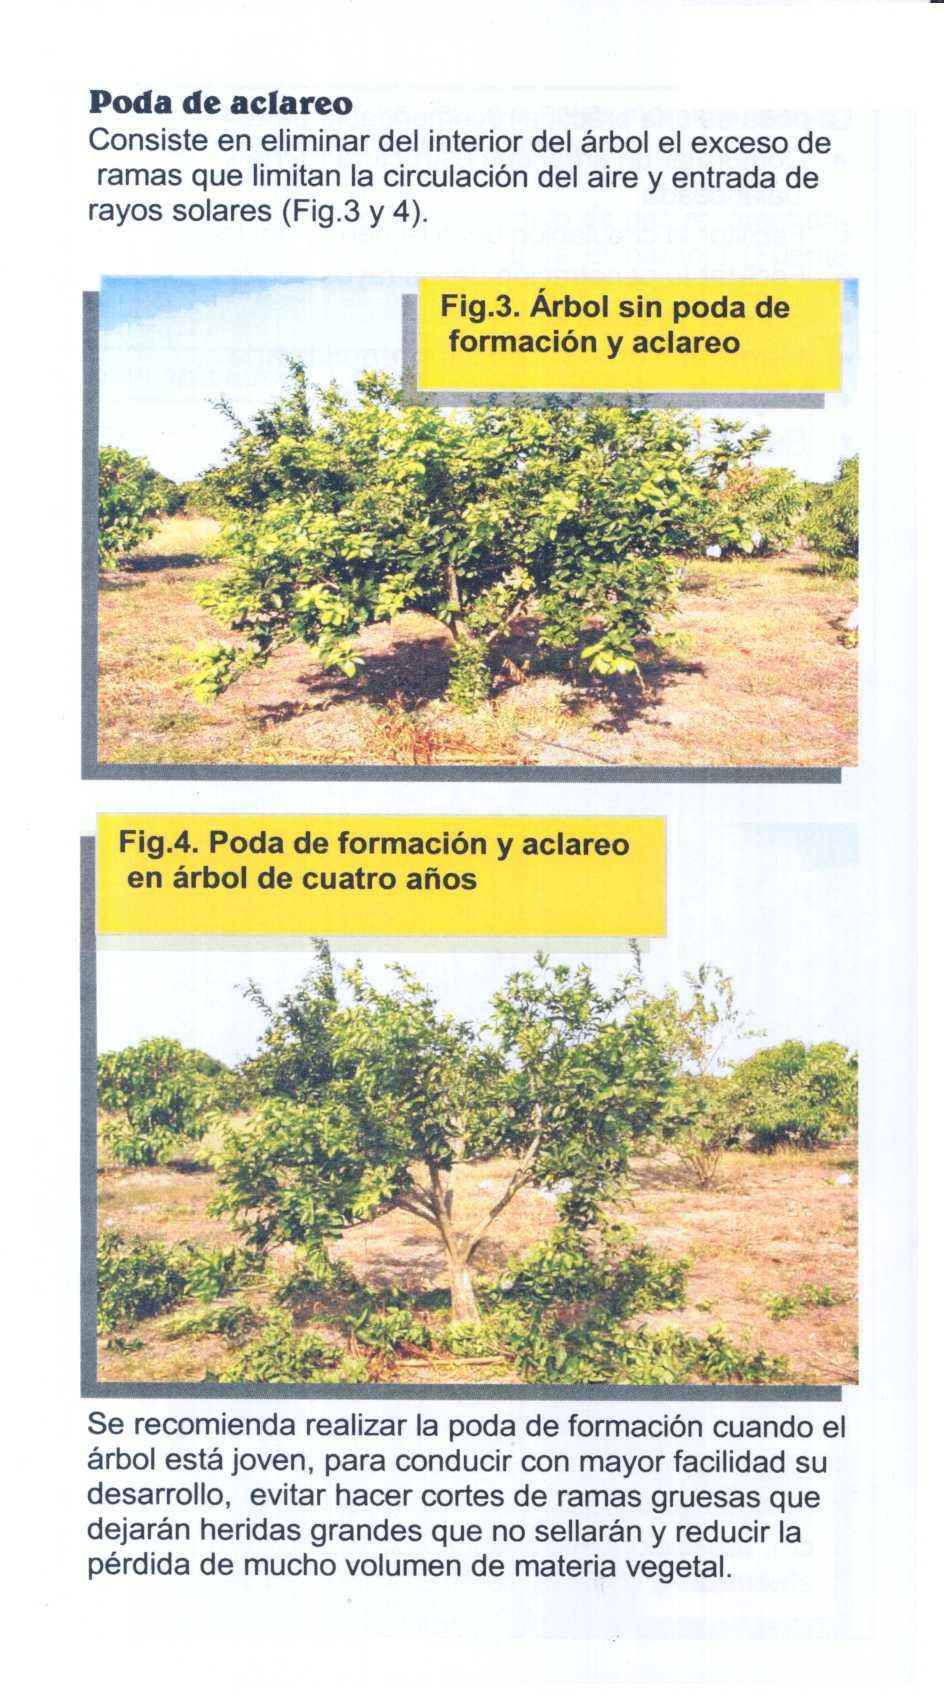 Poda de aclareo Consiste en eliminar del interior del árbol el exceso de ramas que limitan la circulación del aire y entrada de rayos solares (Fig.3 y 4). Fig.3. Árbol sin poda de formación y aclareo y Fig.